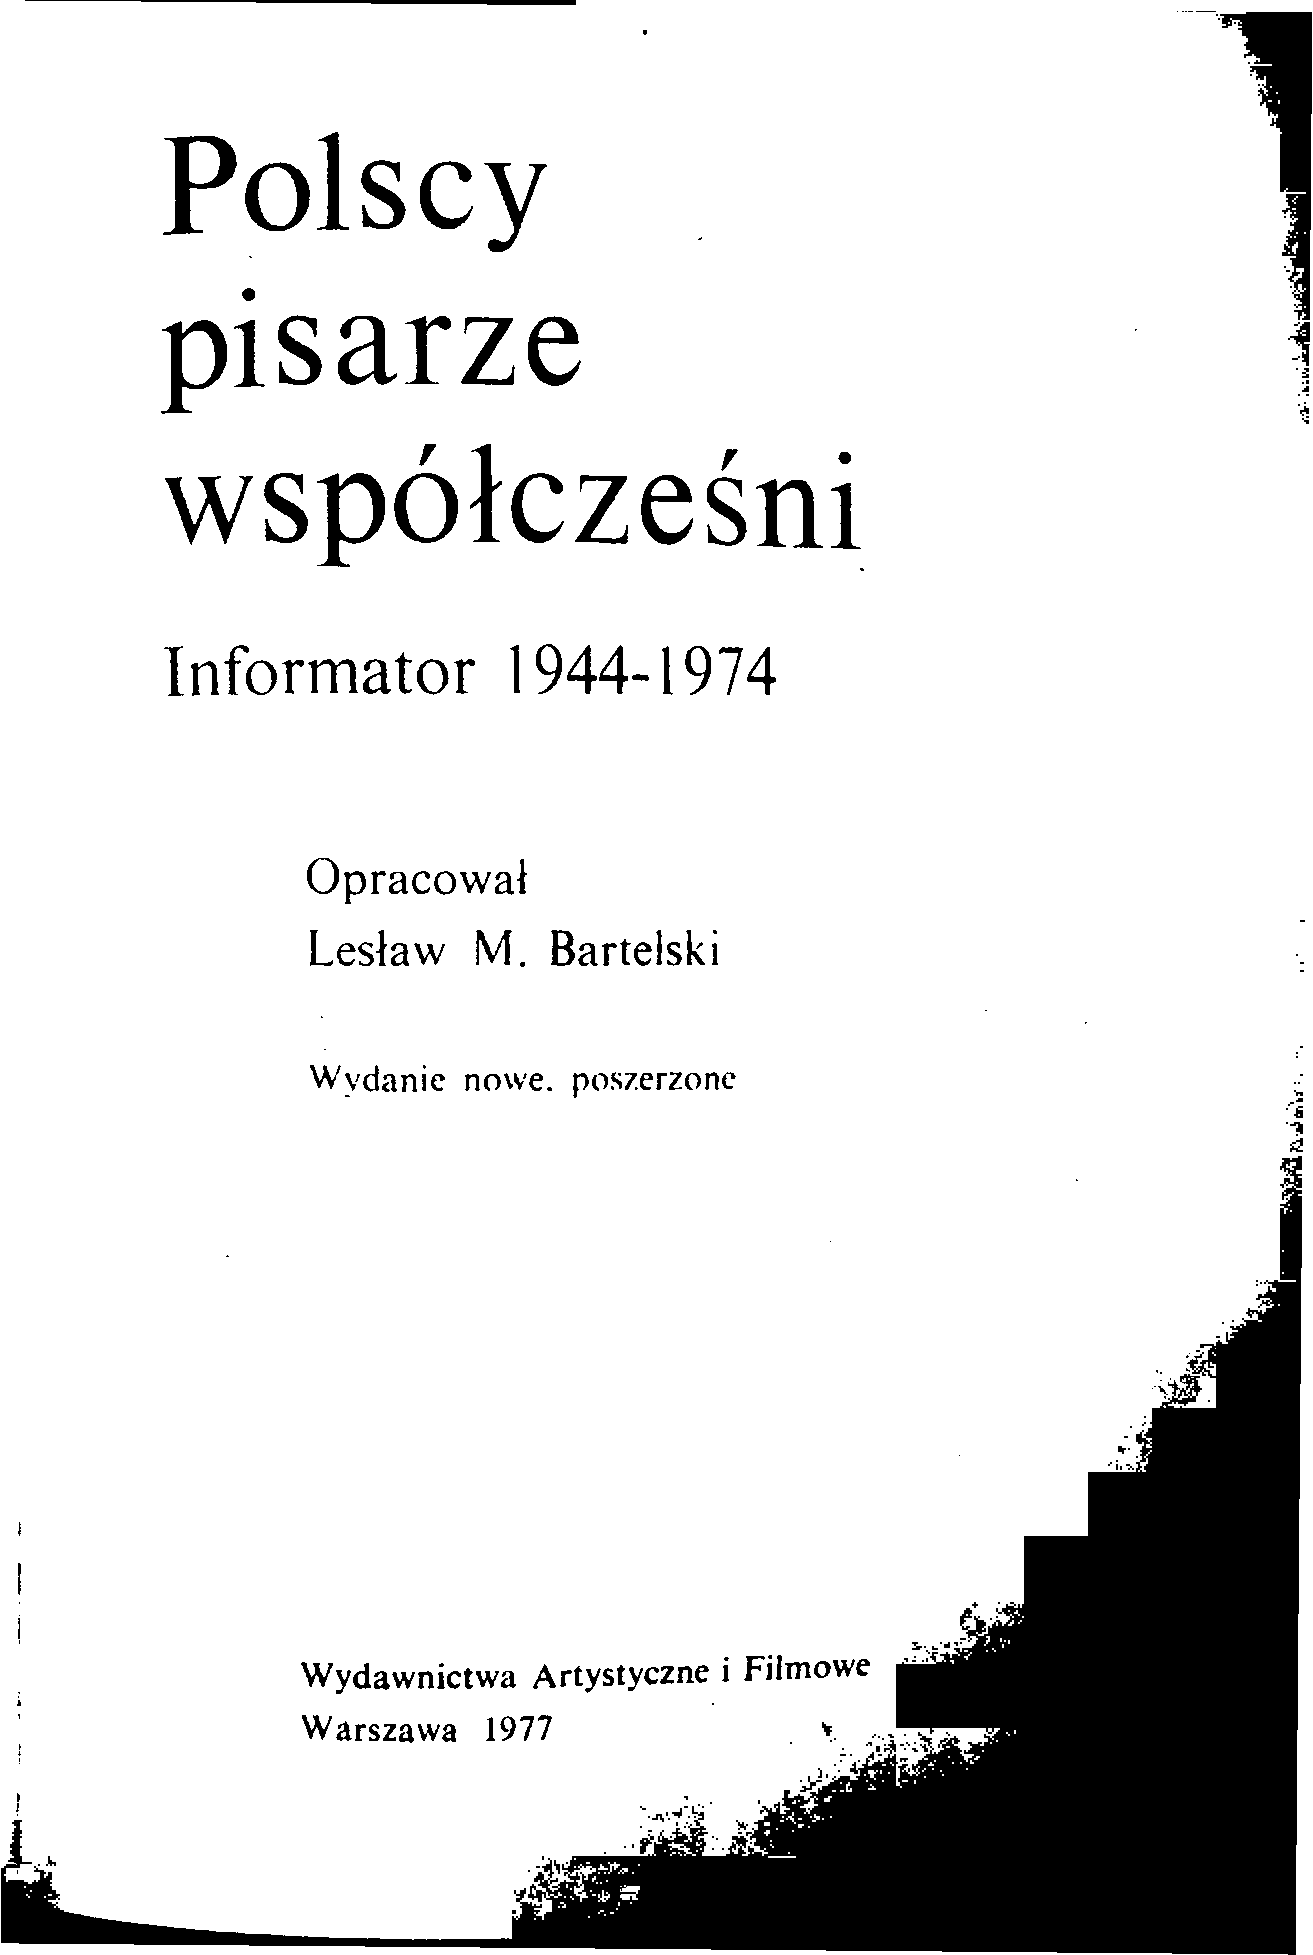 LITERATURA POLSKA - POLSCY PISARZE WSPÓŁCZEŚNI 1944 - 1974.tif